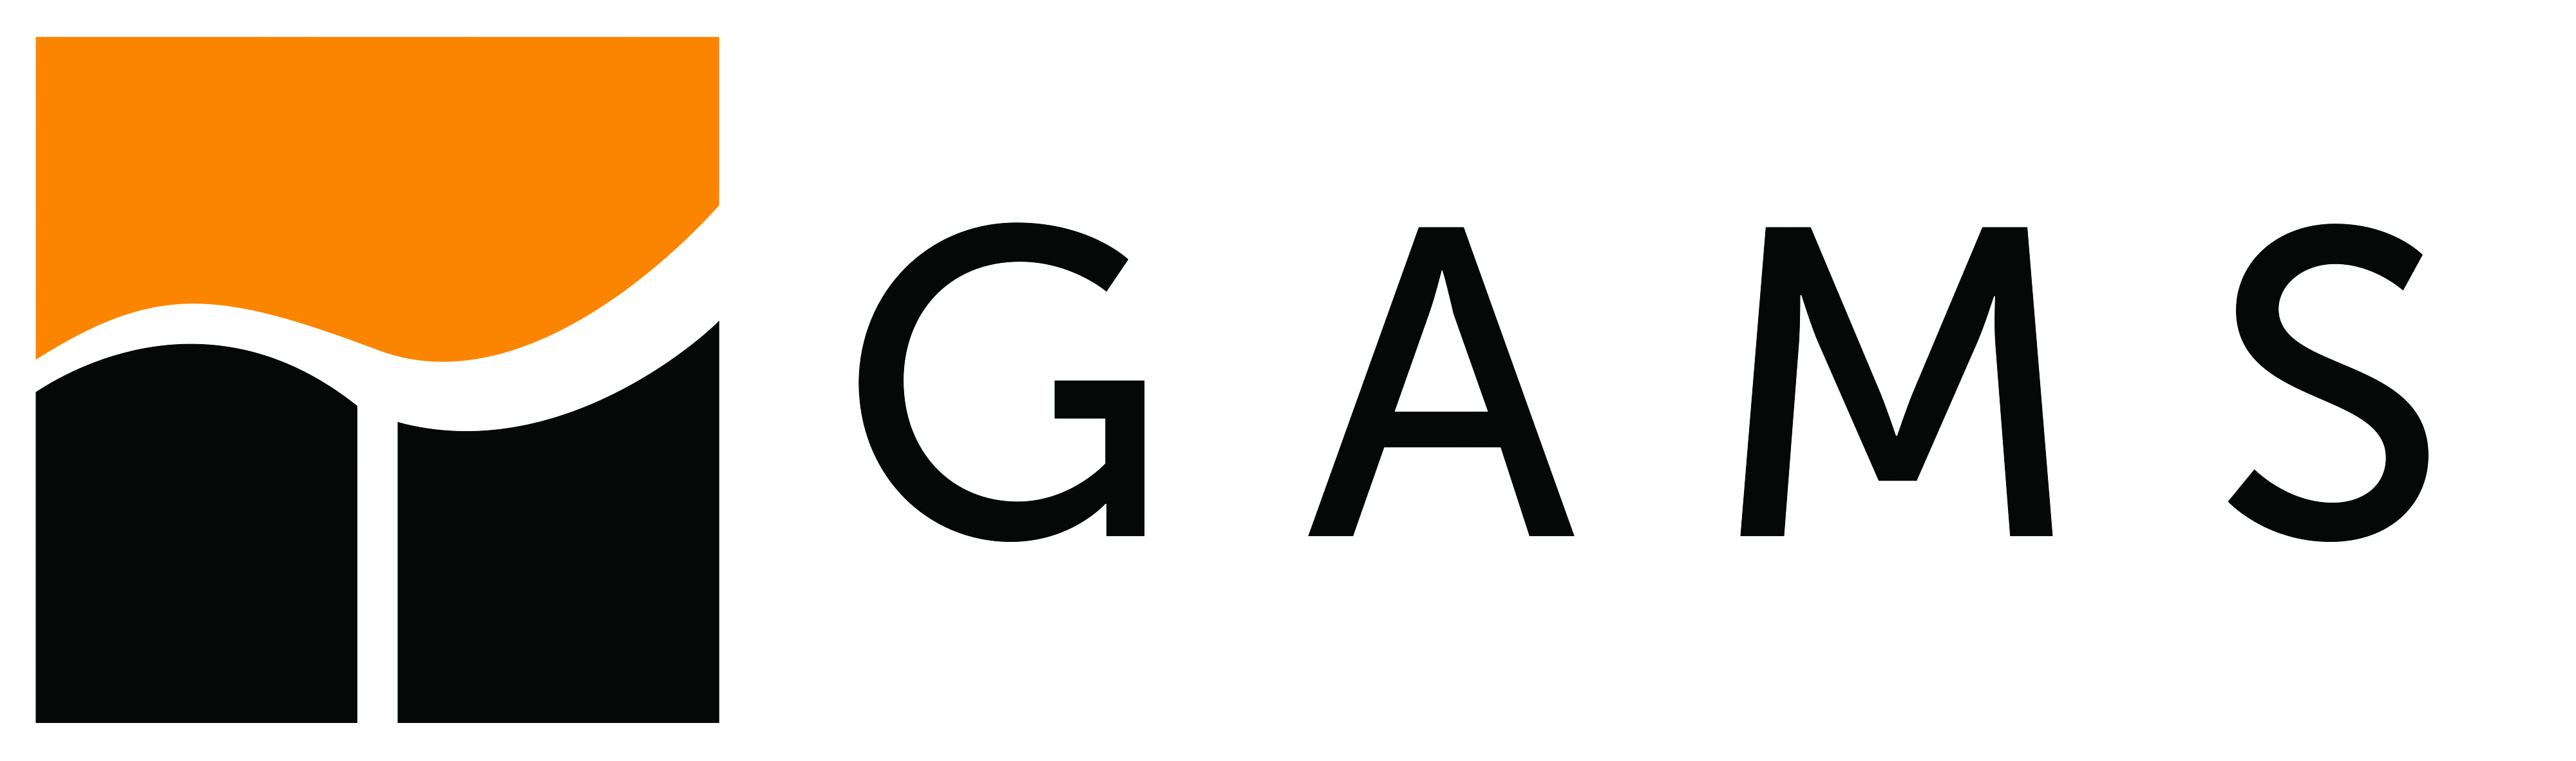 GAMS logo